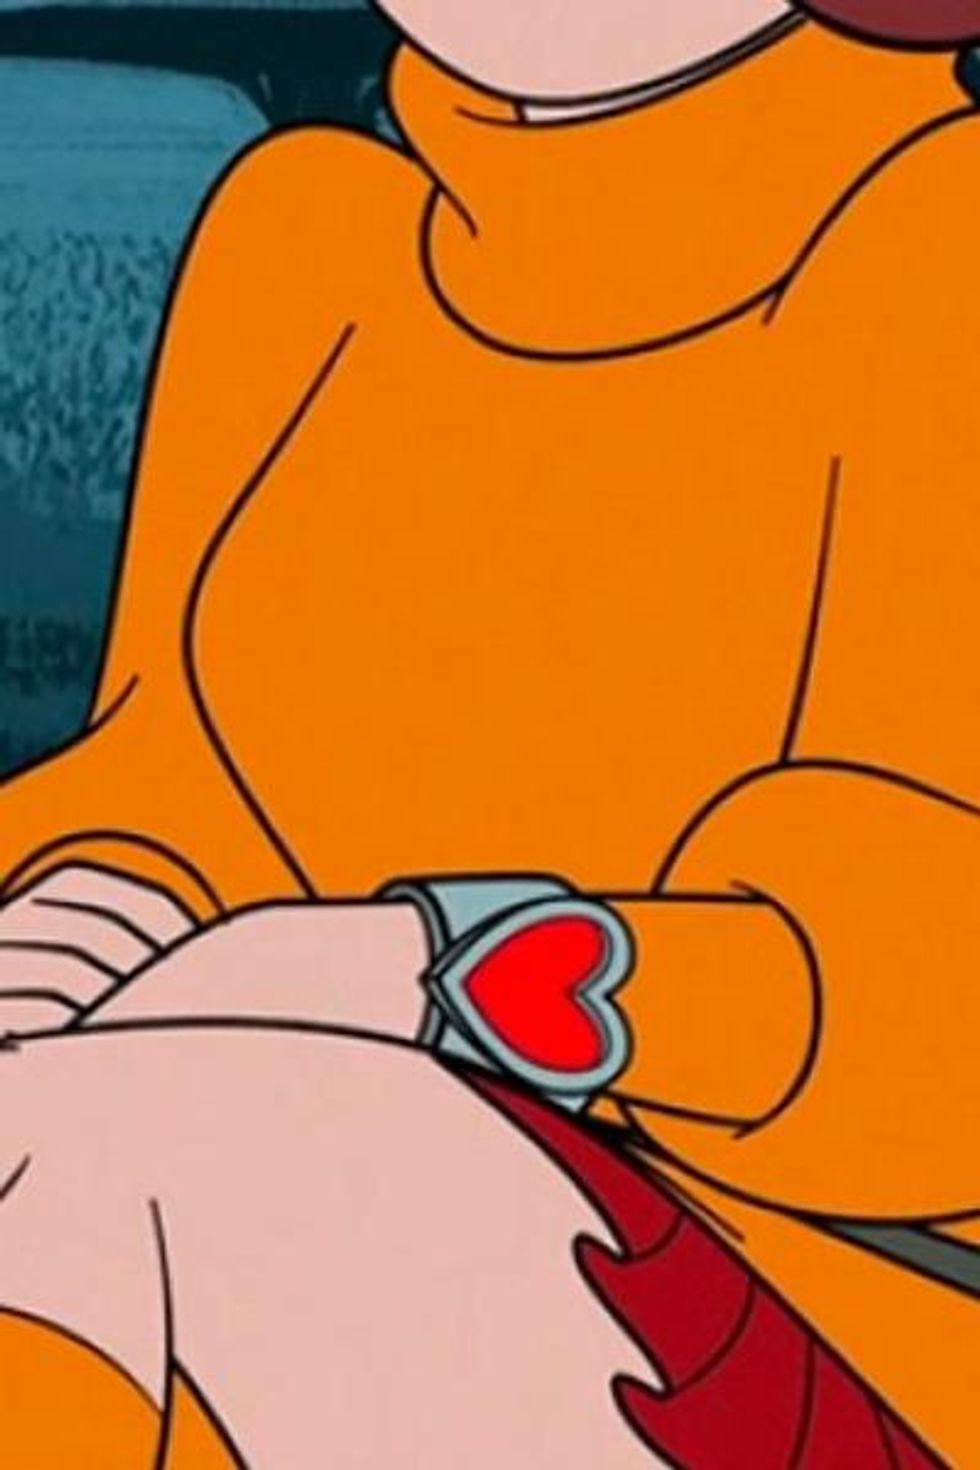 Velma wristband close up